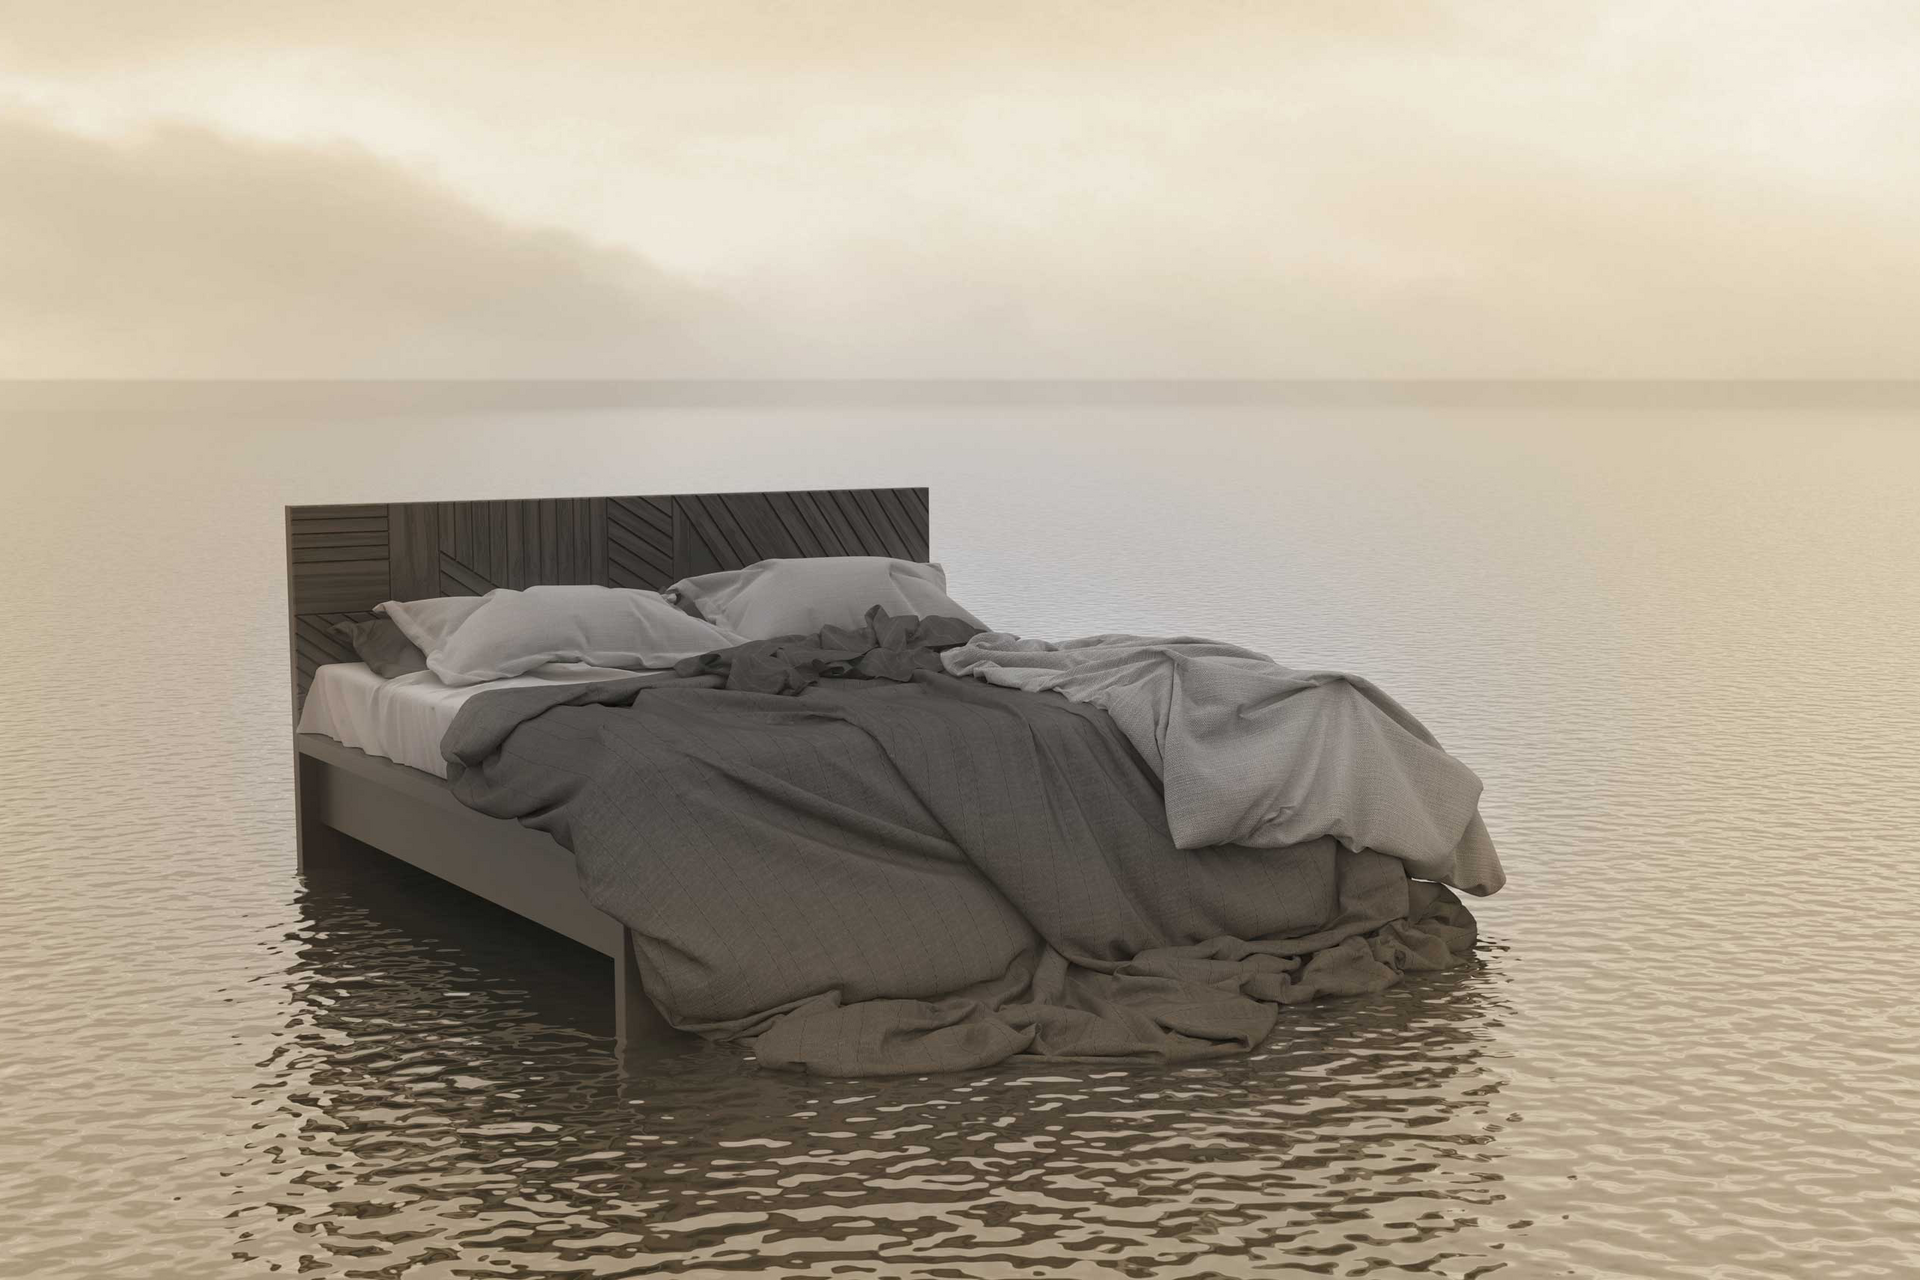 Bett steht in Wasser mit endlosem Horizont